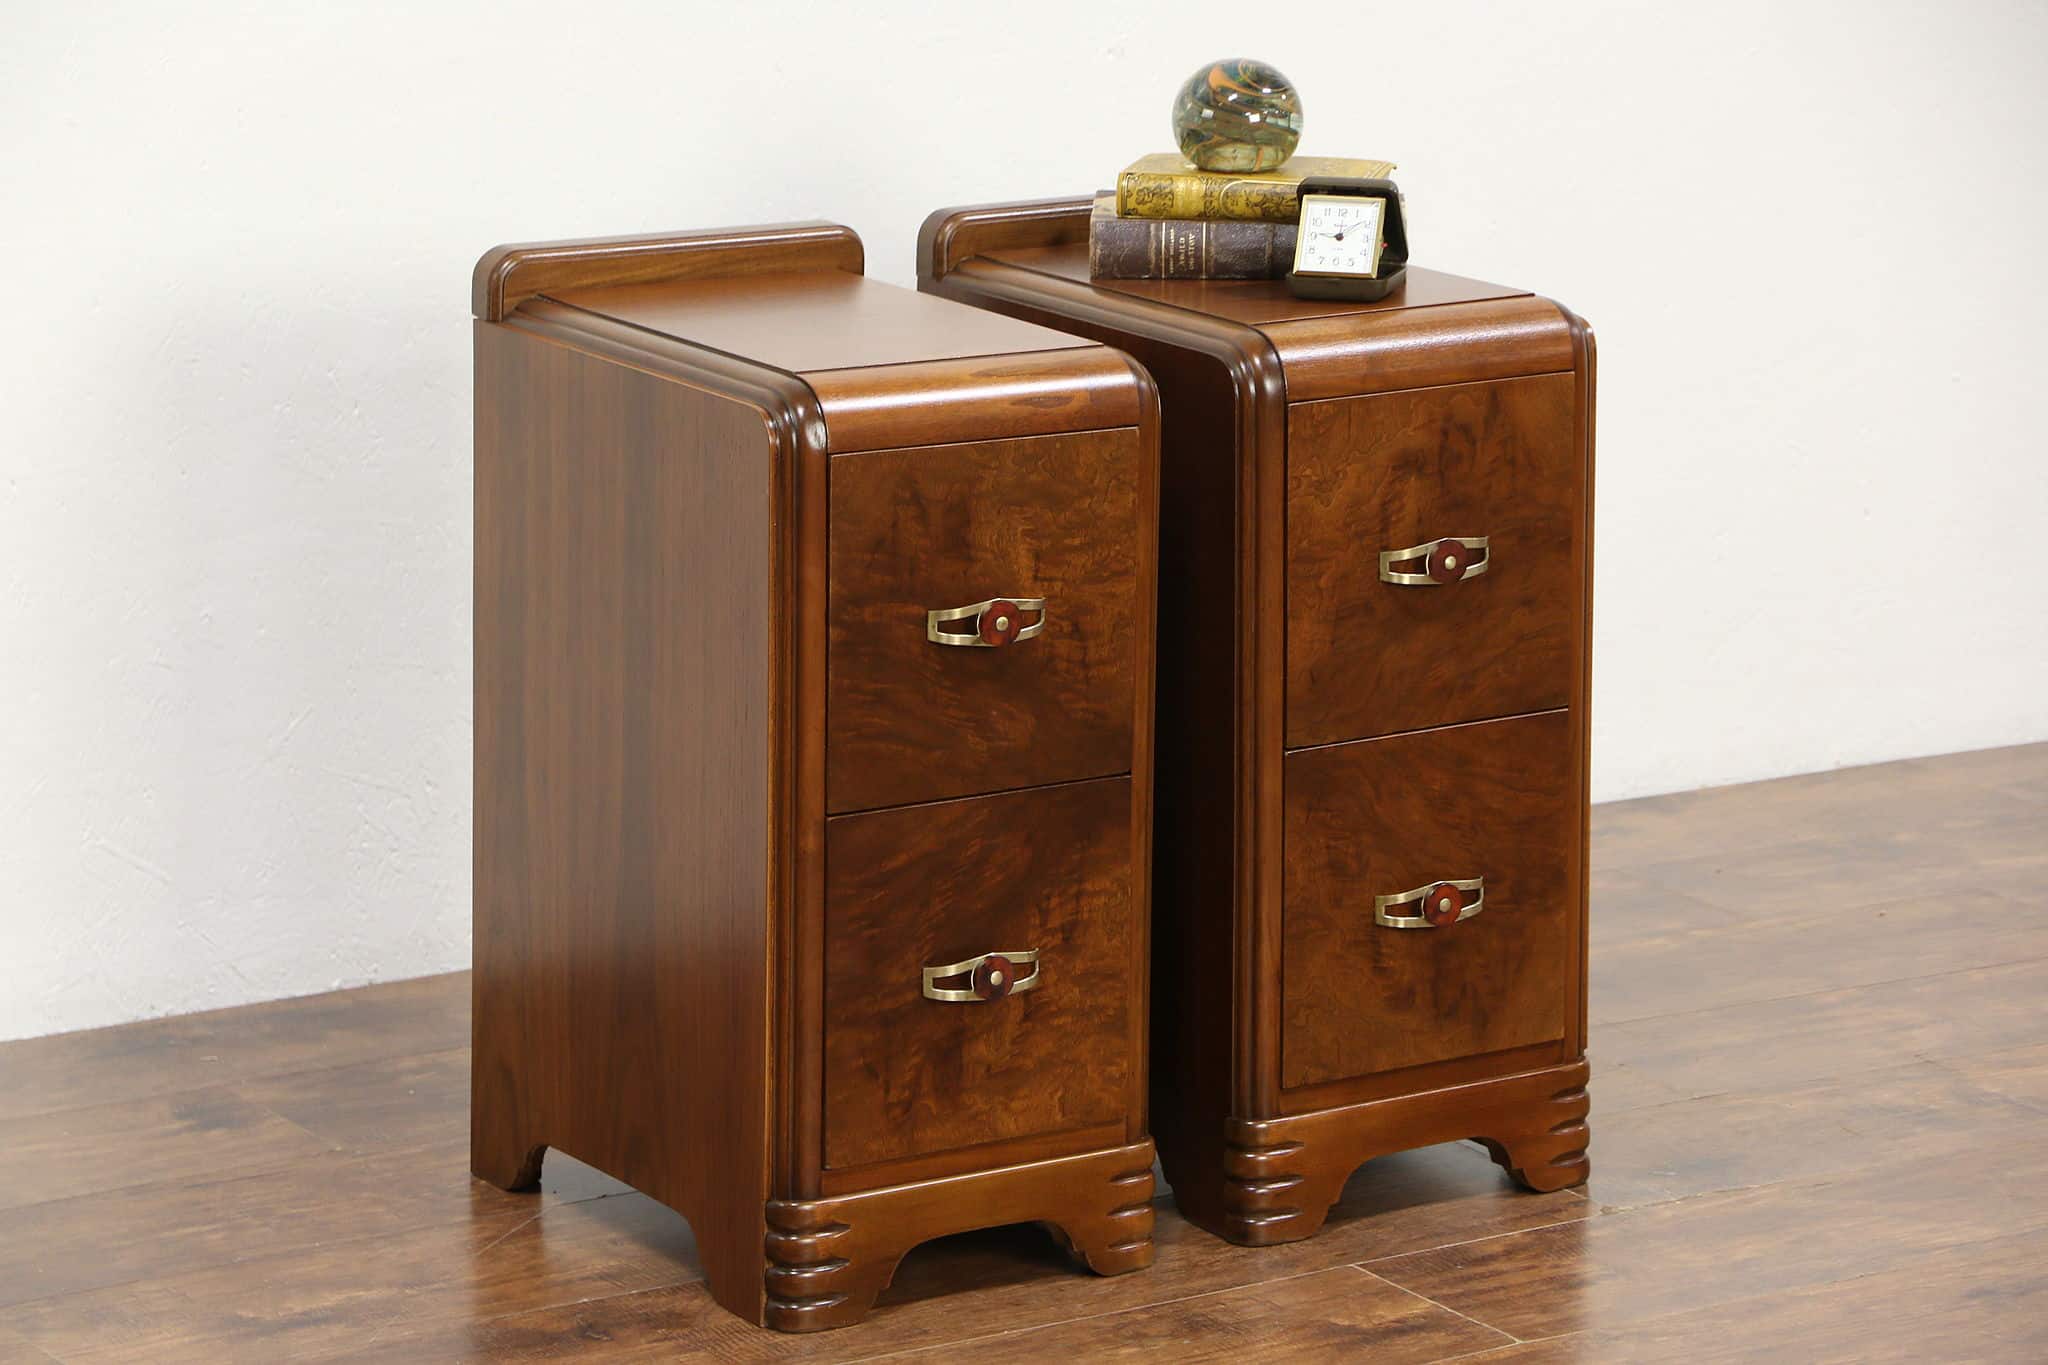 DesignerApproved Styling Secrets For Art Deco Furniture  Havenly Blog   Havenly Interior Design Blog